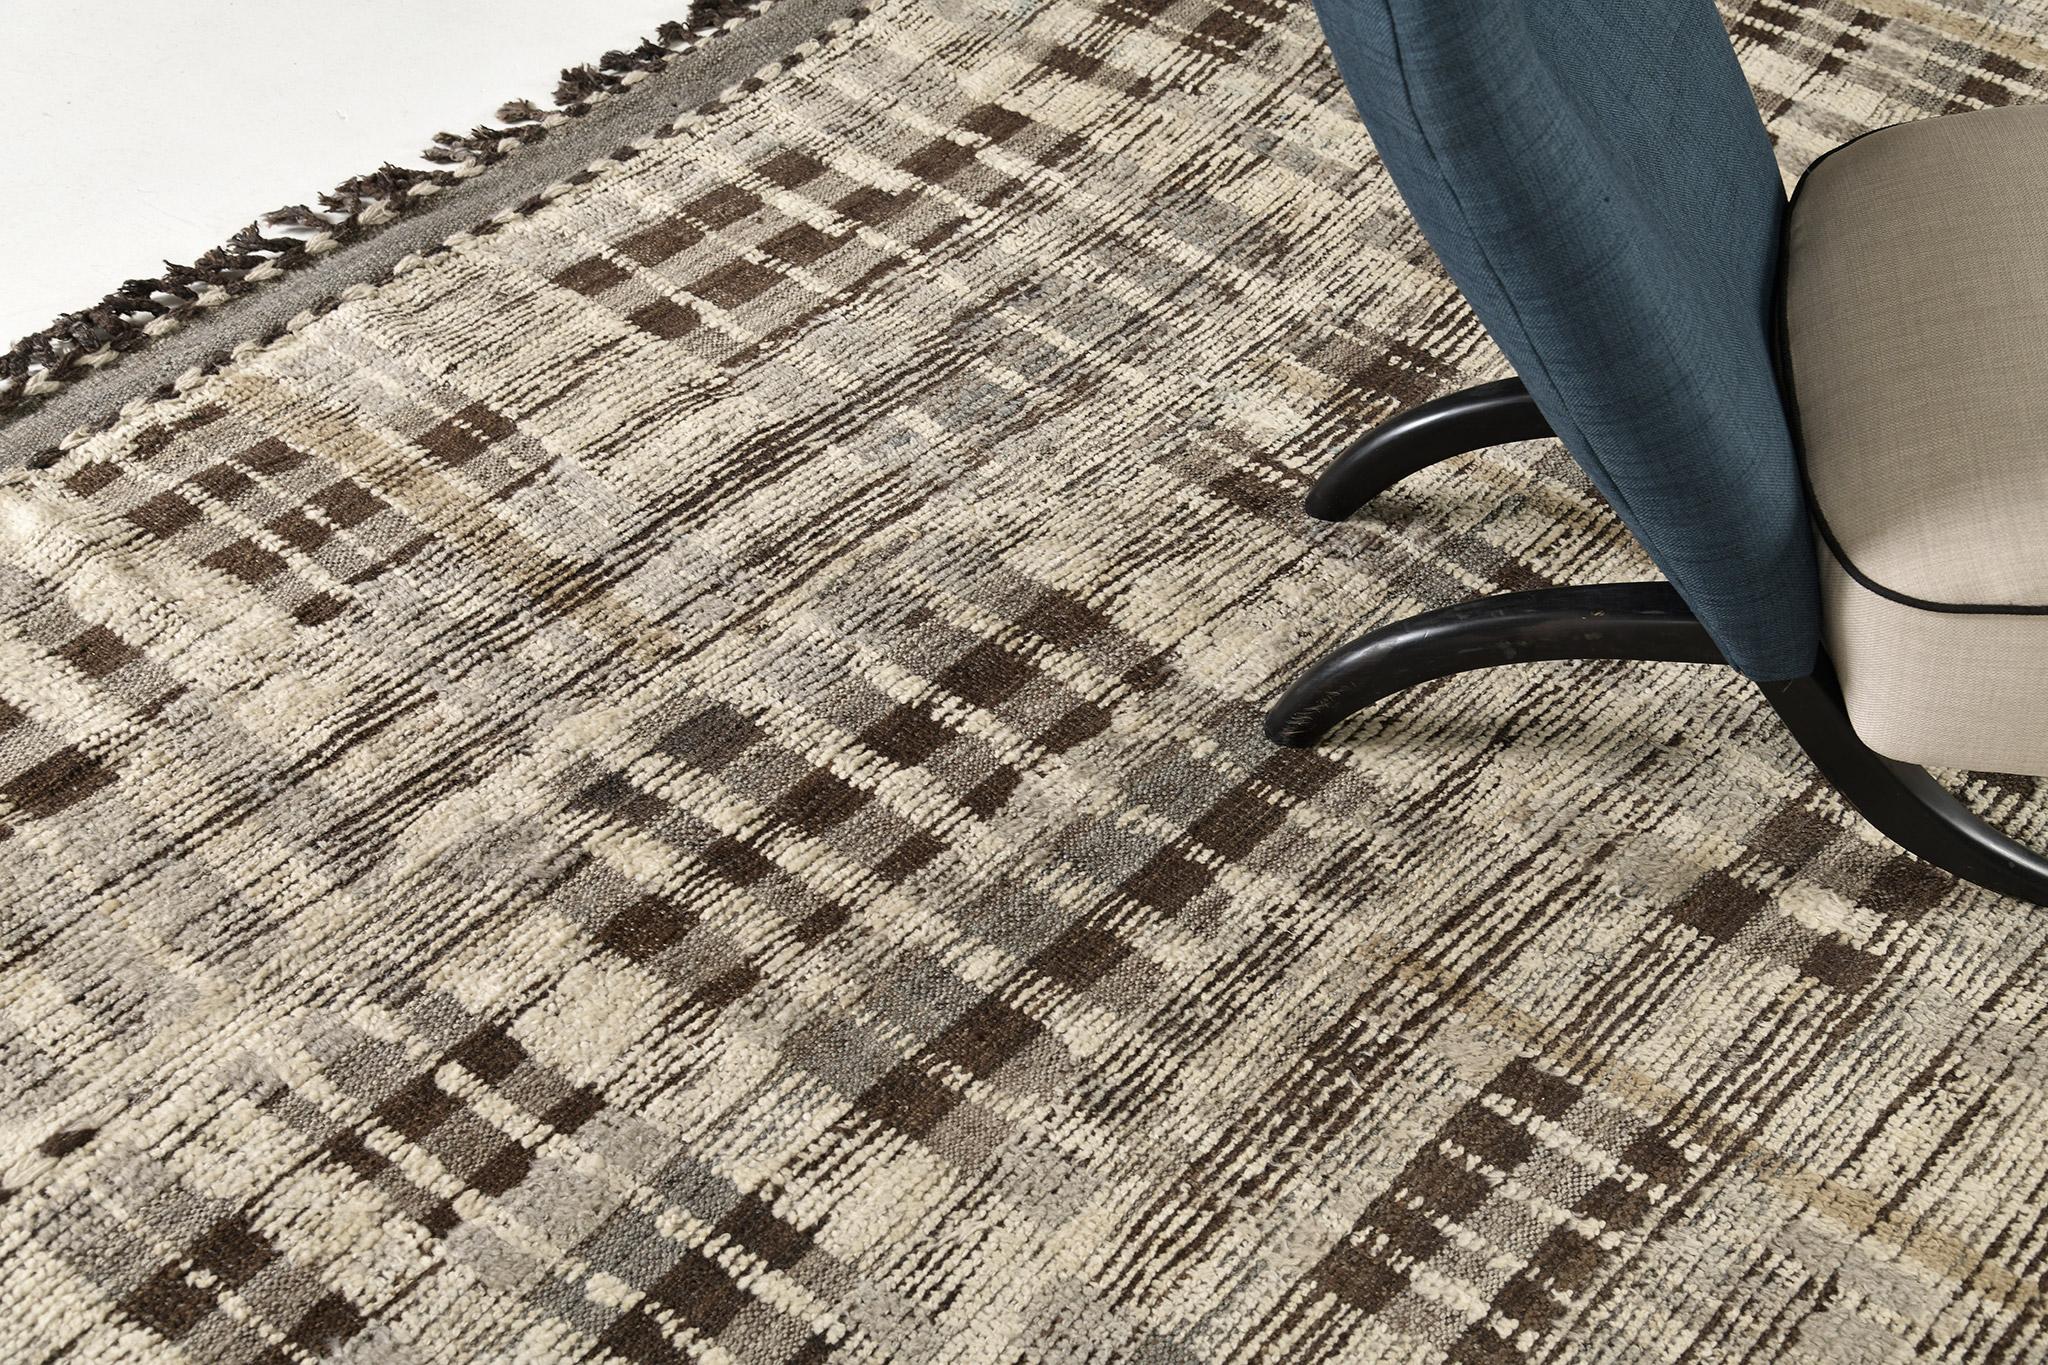 Baccata verwendet Linienführung und Farbe, um der handgewebten Wolle Definition und Bewegung zu verleihen. Liniendetails in Khaki und Umbrabraun ziehen sich faszinierend über den Teppich. Ein detailliertes, natürliches Flachgewebe verläuft um den